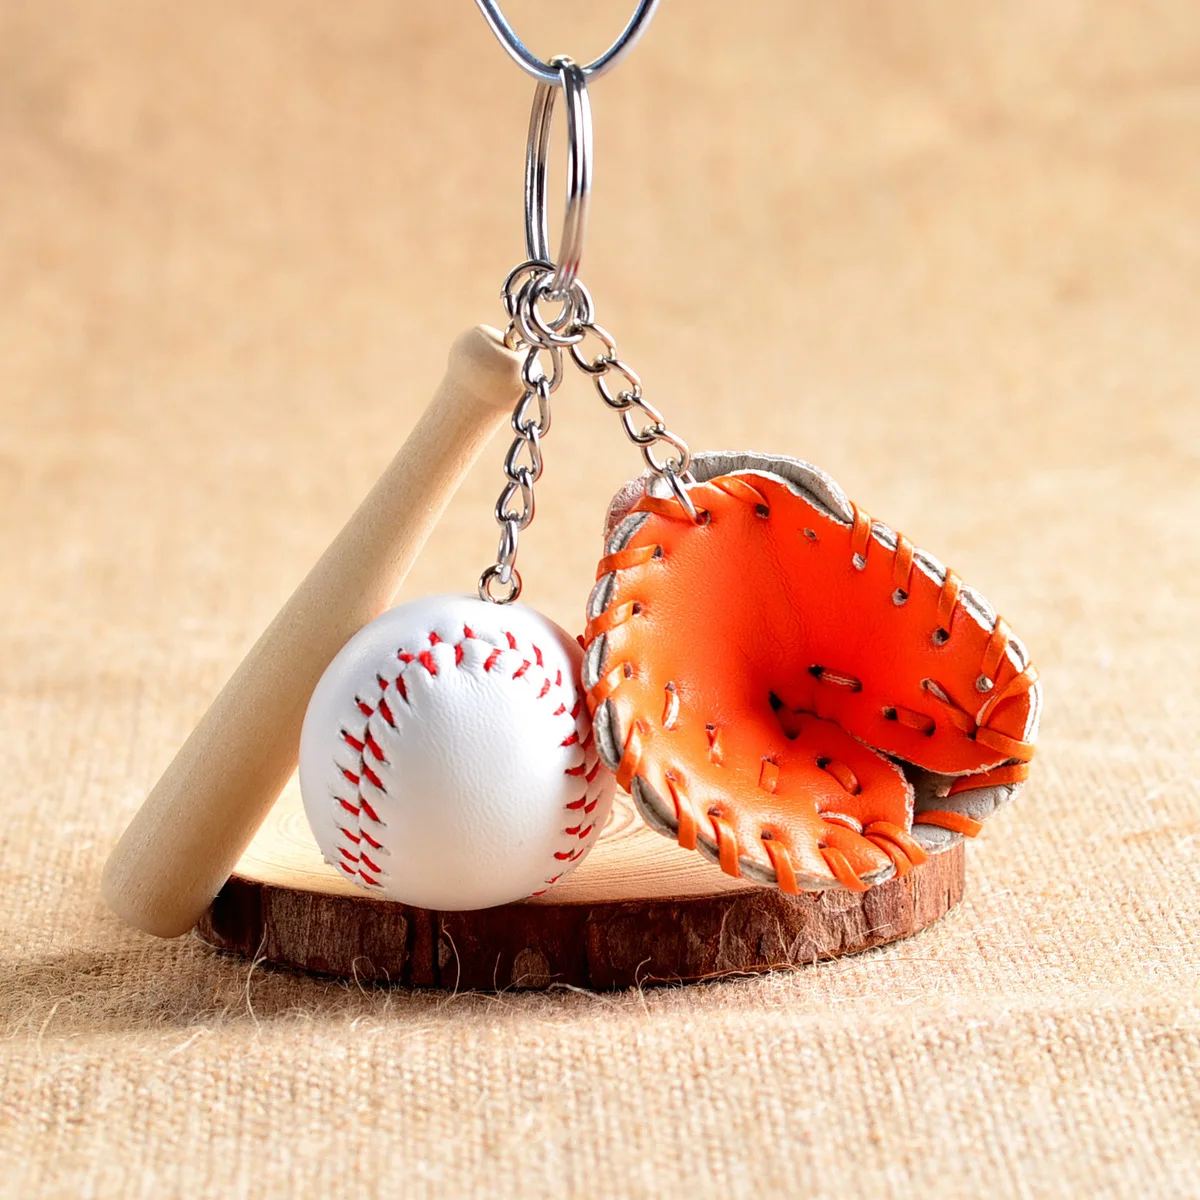 Бейсбол мини сувенир ручной работы Милая база мяч брелок для ключей Спортивная цепь автомобильный брелок в стиле бейсбола новинка подарок L754OLE